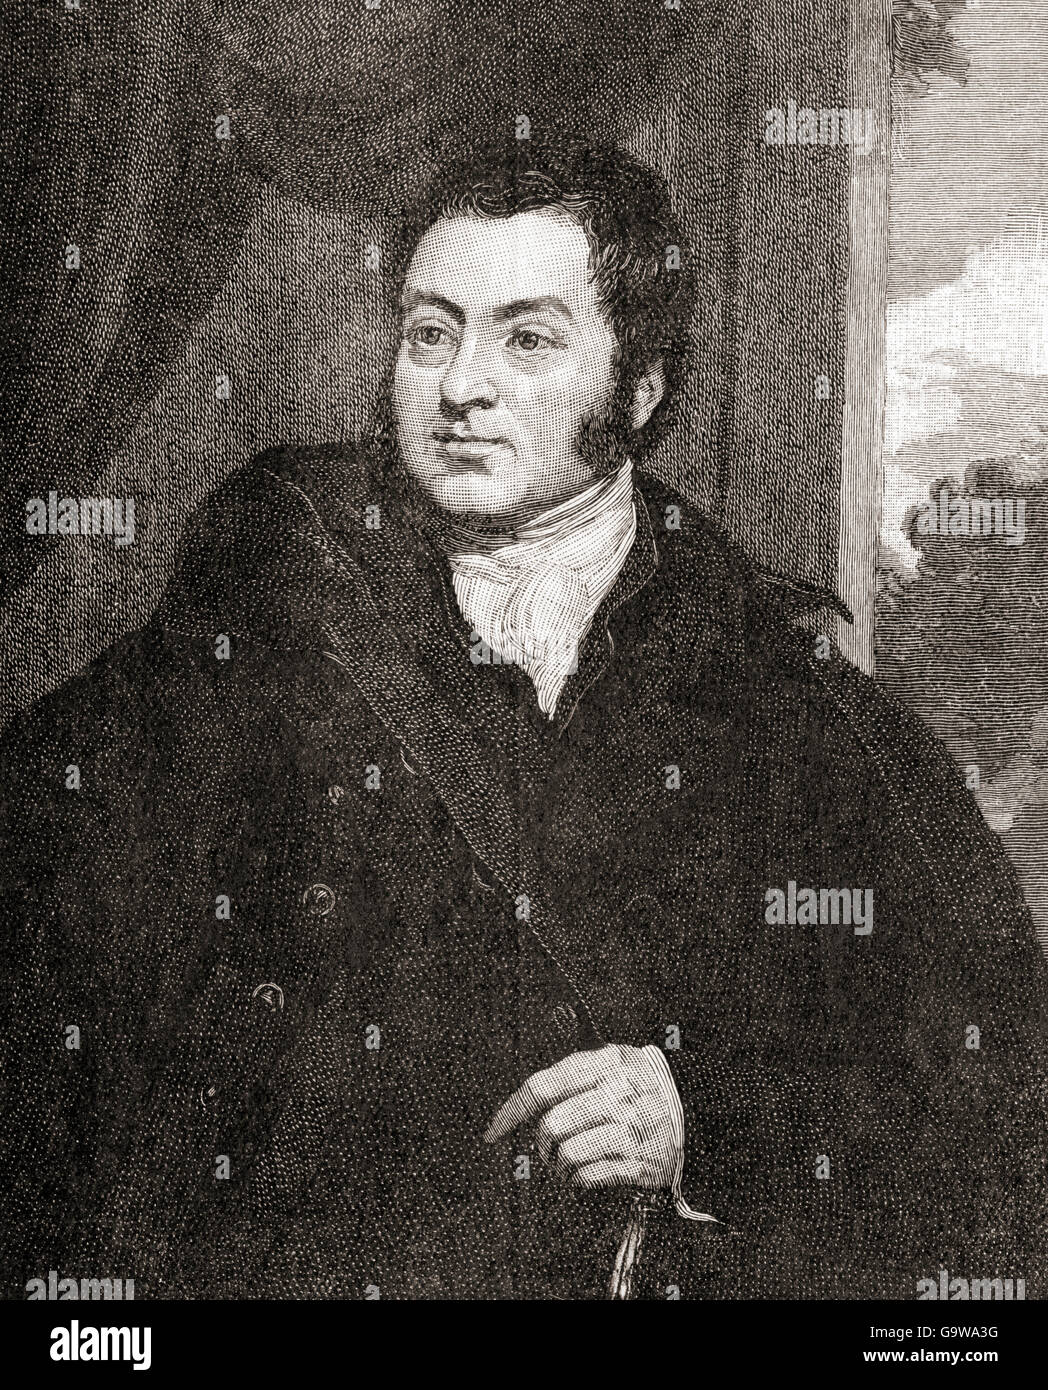 John Charles Spencer, 3e comte Spencer, 1782 - 1845, alias le Vicomte Althorp. Homme d'État britannique. Banque D'Images